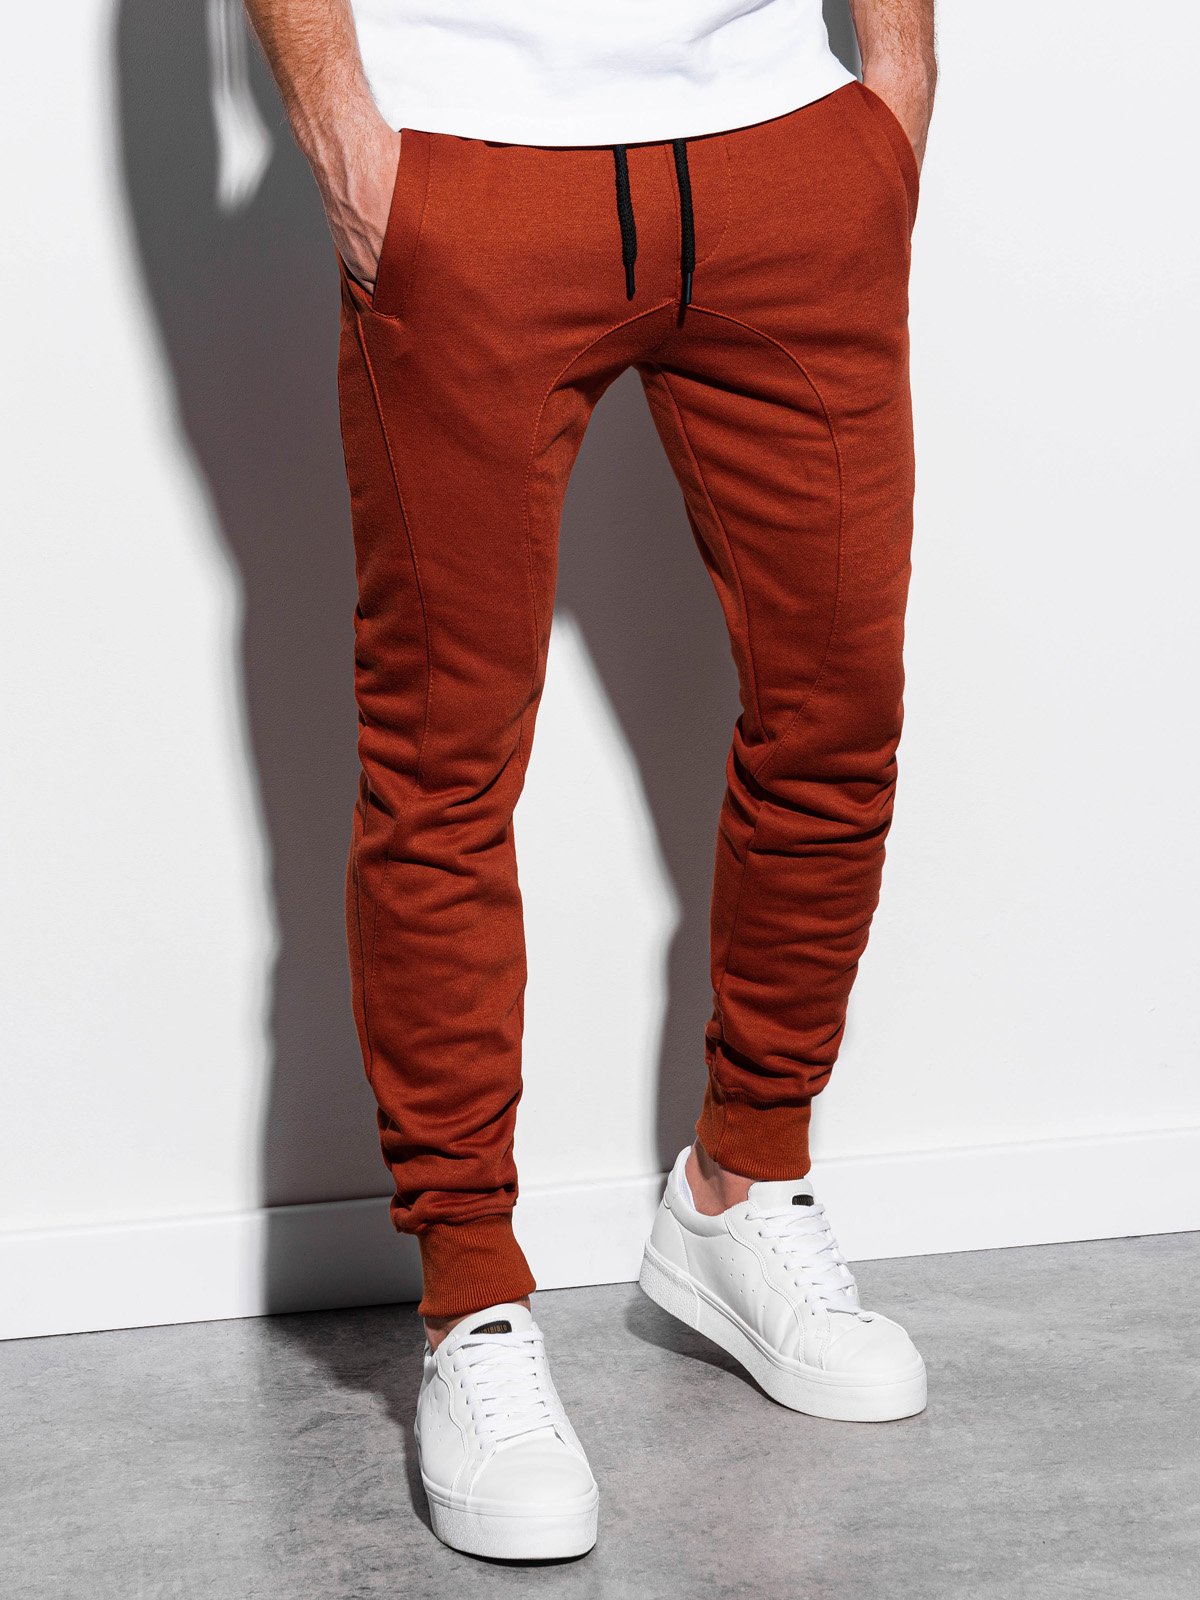 Men's sweatpants P867 - brick | MODONE wholesale - Clothing For Men